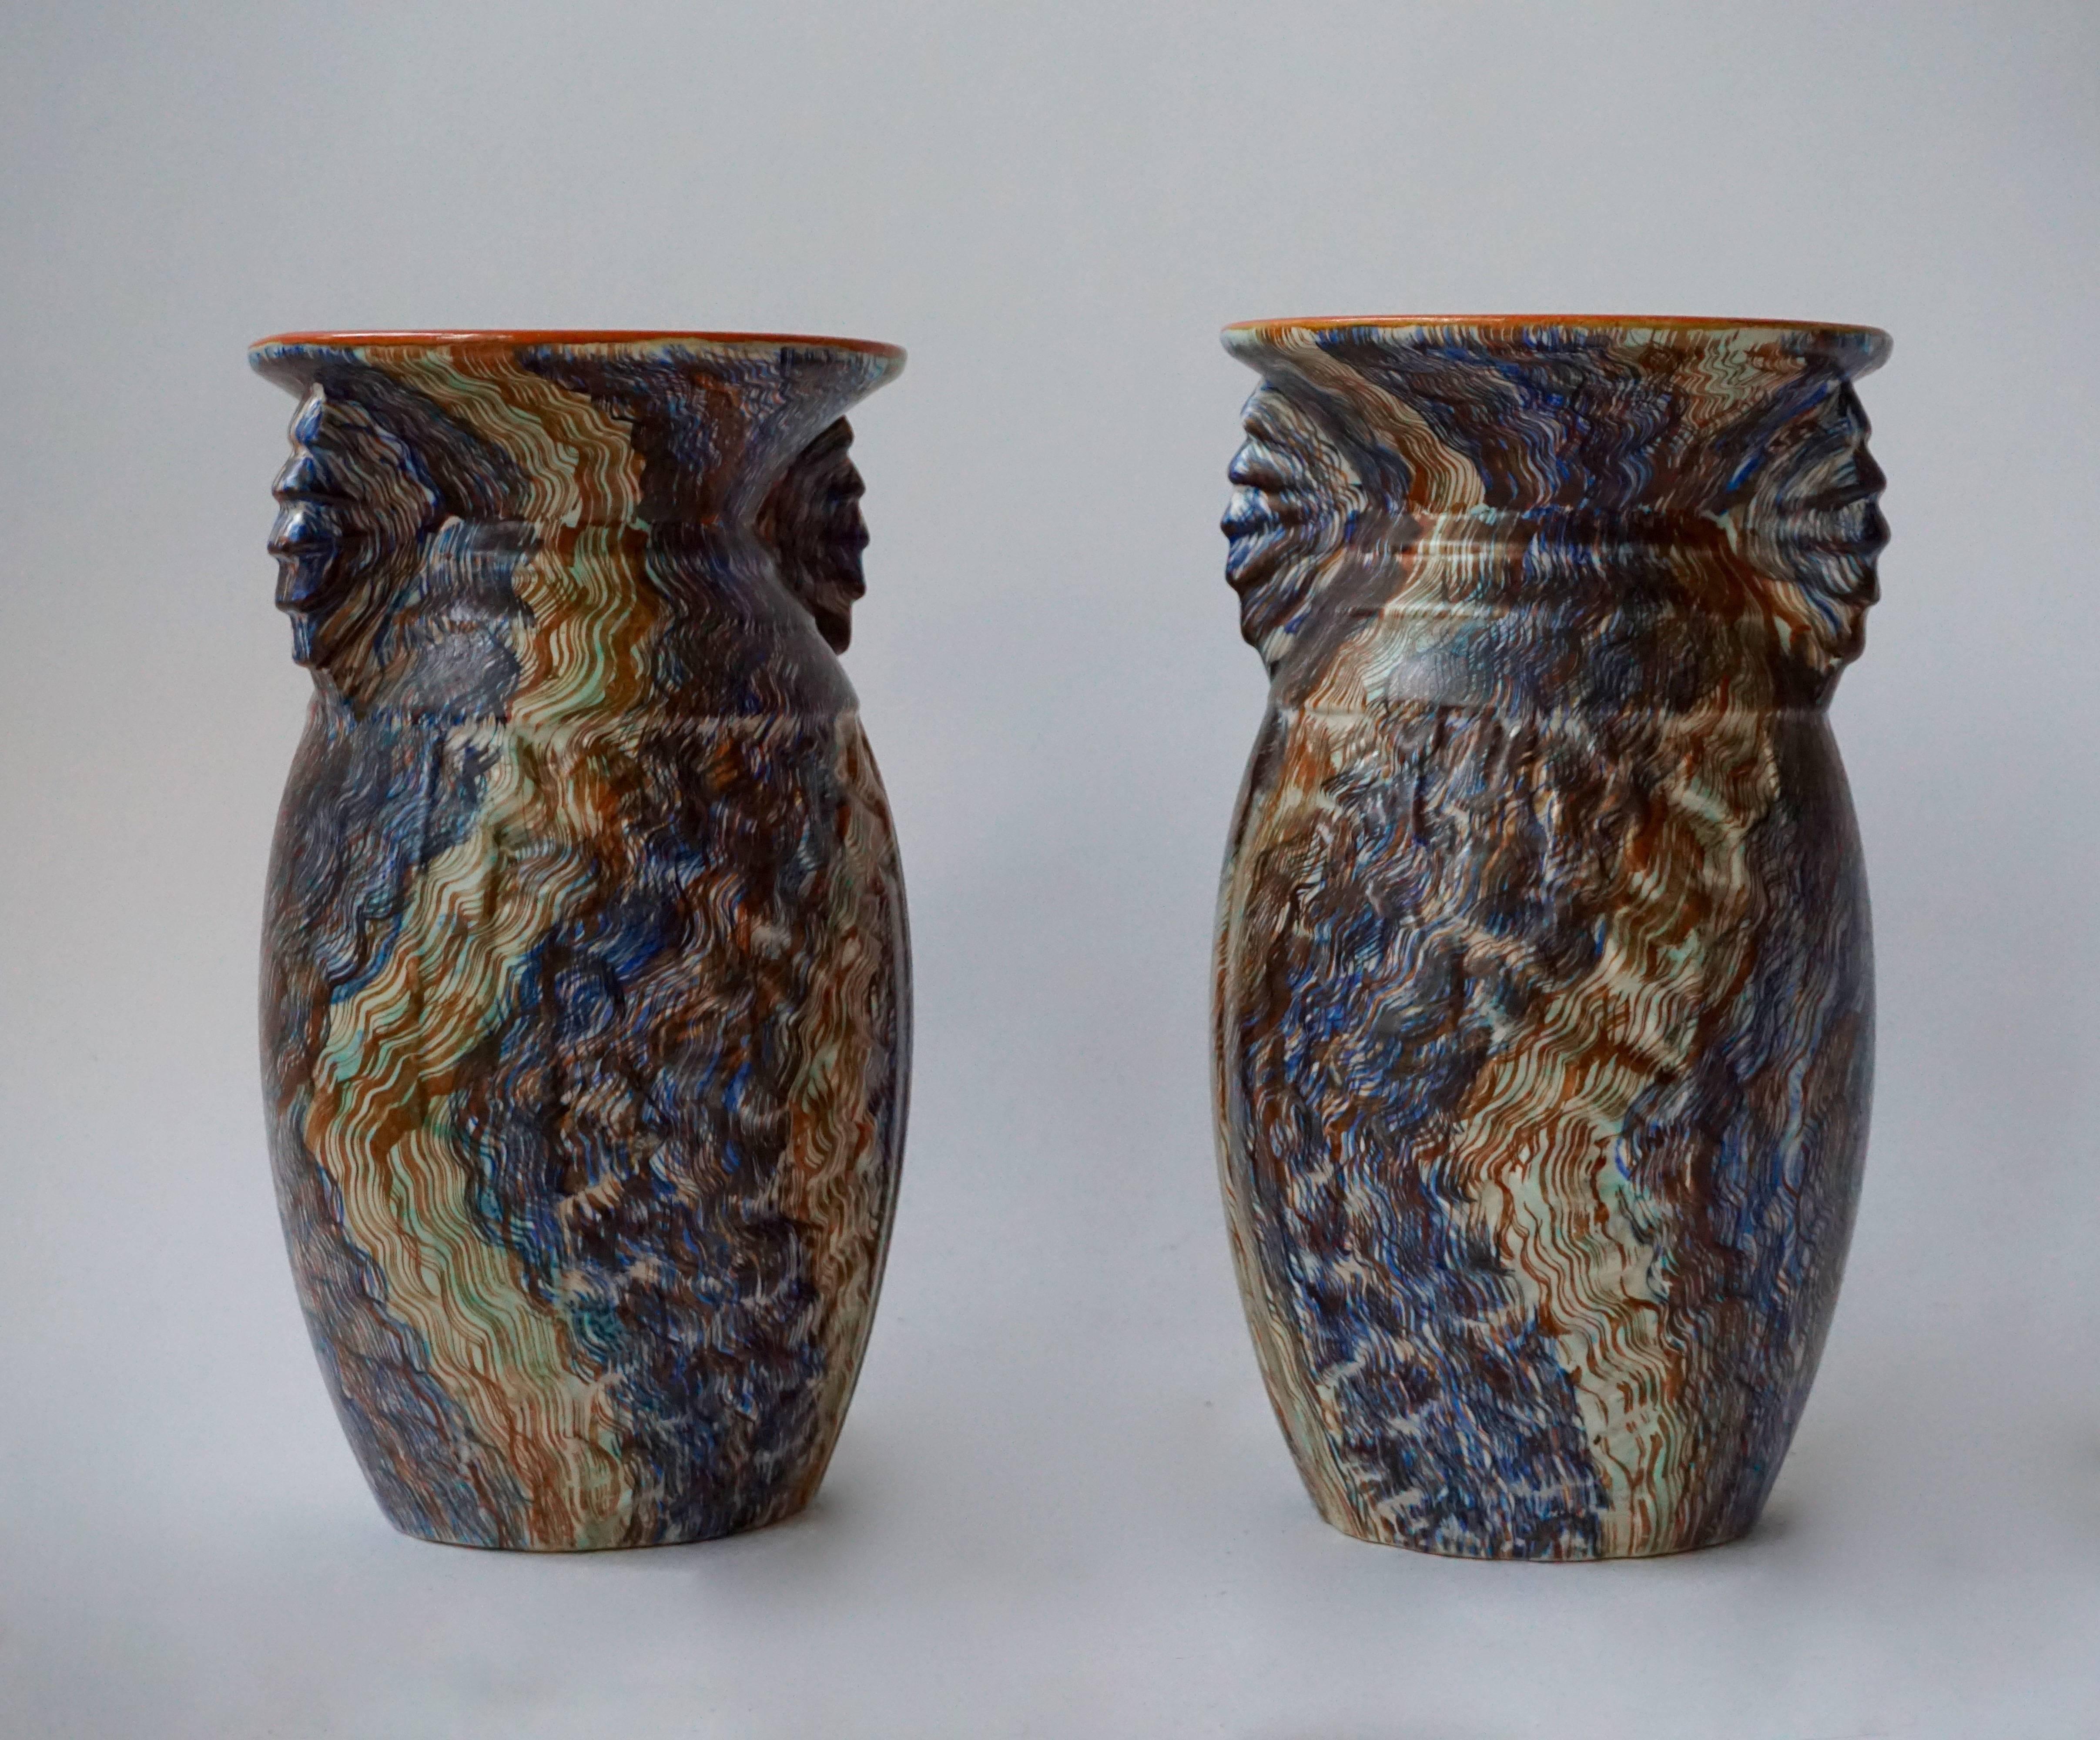 A pair of Belgian ceramic vases.
Measures: Diameter 14 cm,
height 25 cm.